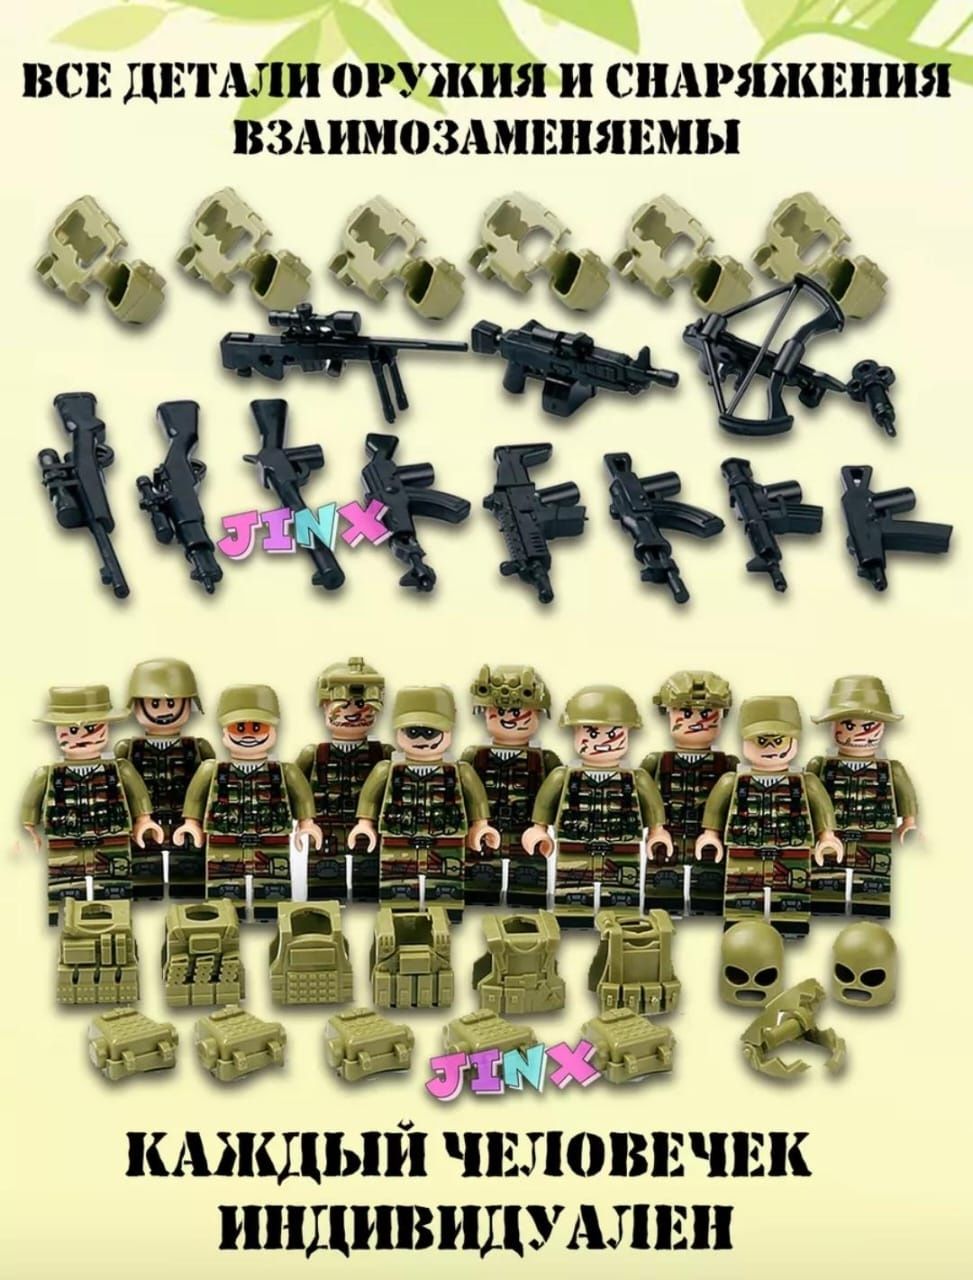 Лего военное оружие и фигурки